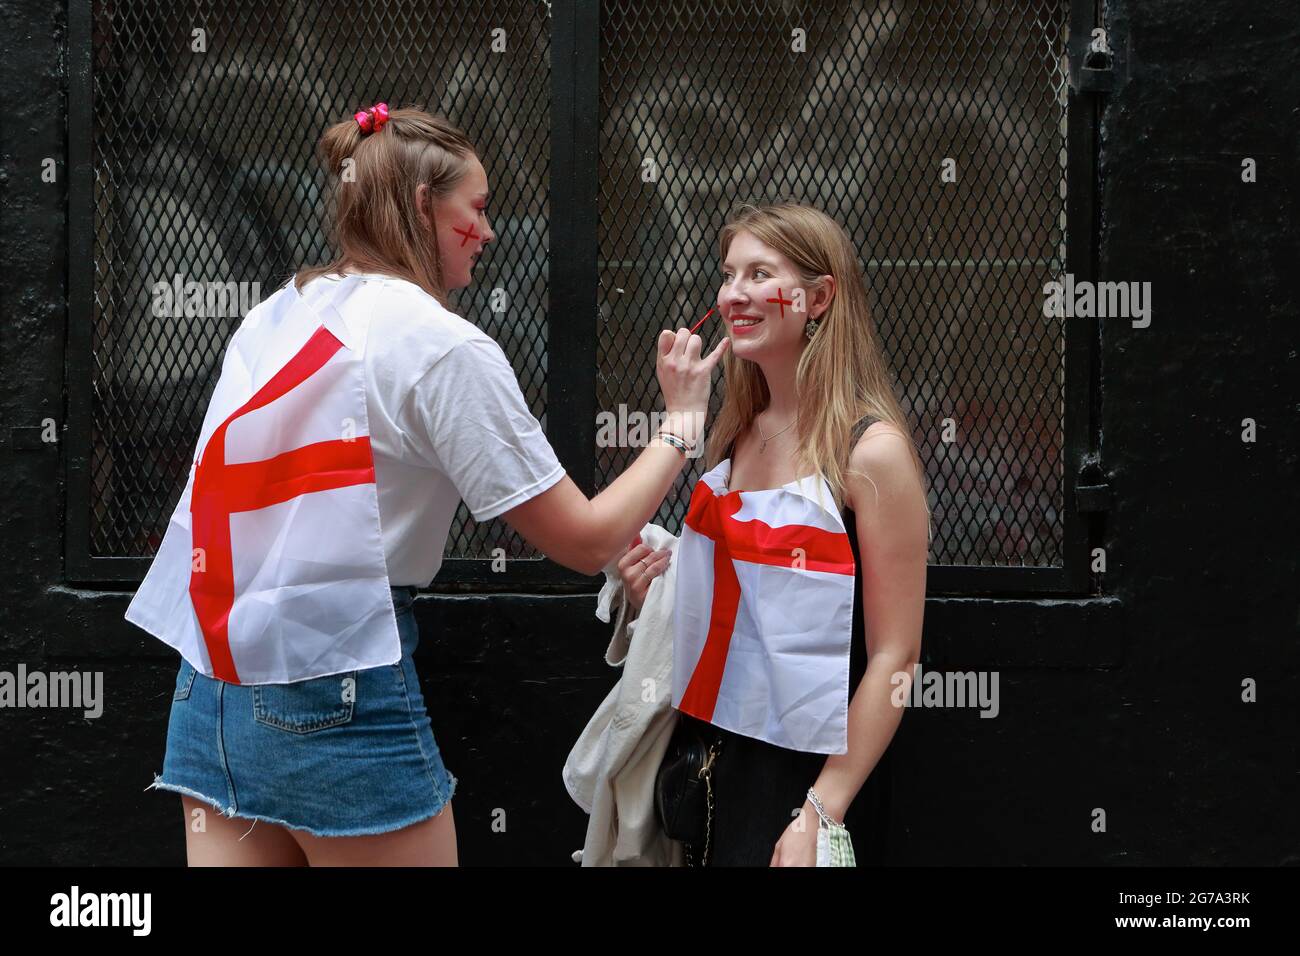 Londra (UK), 11 luglio 2021: Due tifosi inglesi Euro 2020 dipingono a vicenda i volti prima di fare la loro strada per guardare i versetti inglesi Foto Stock